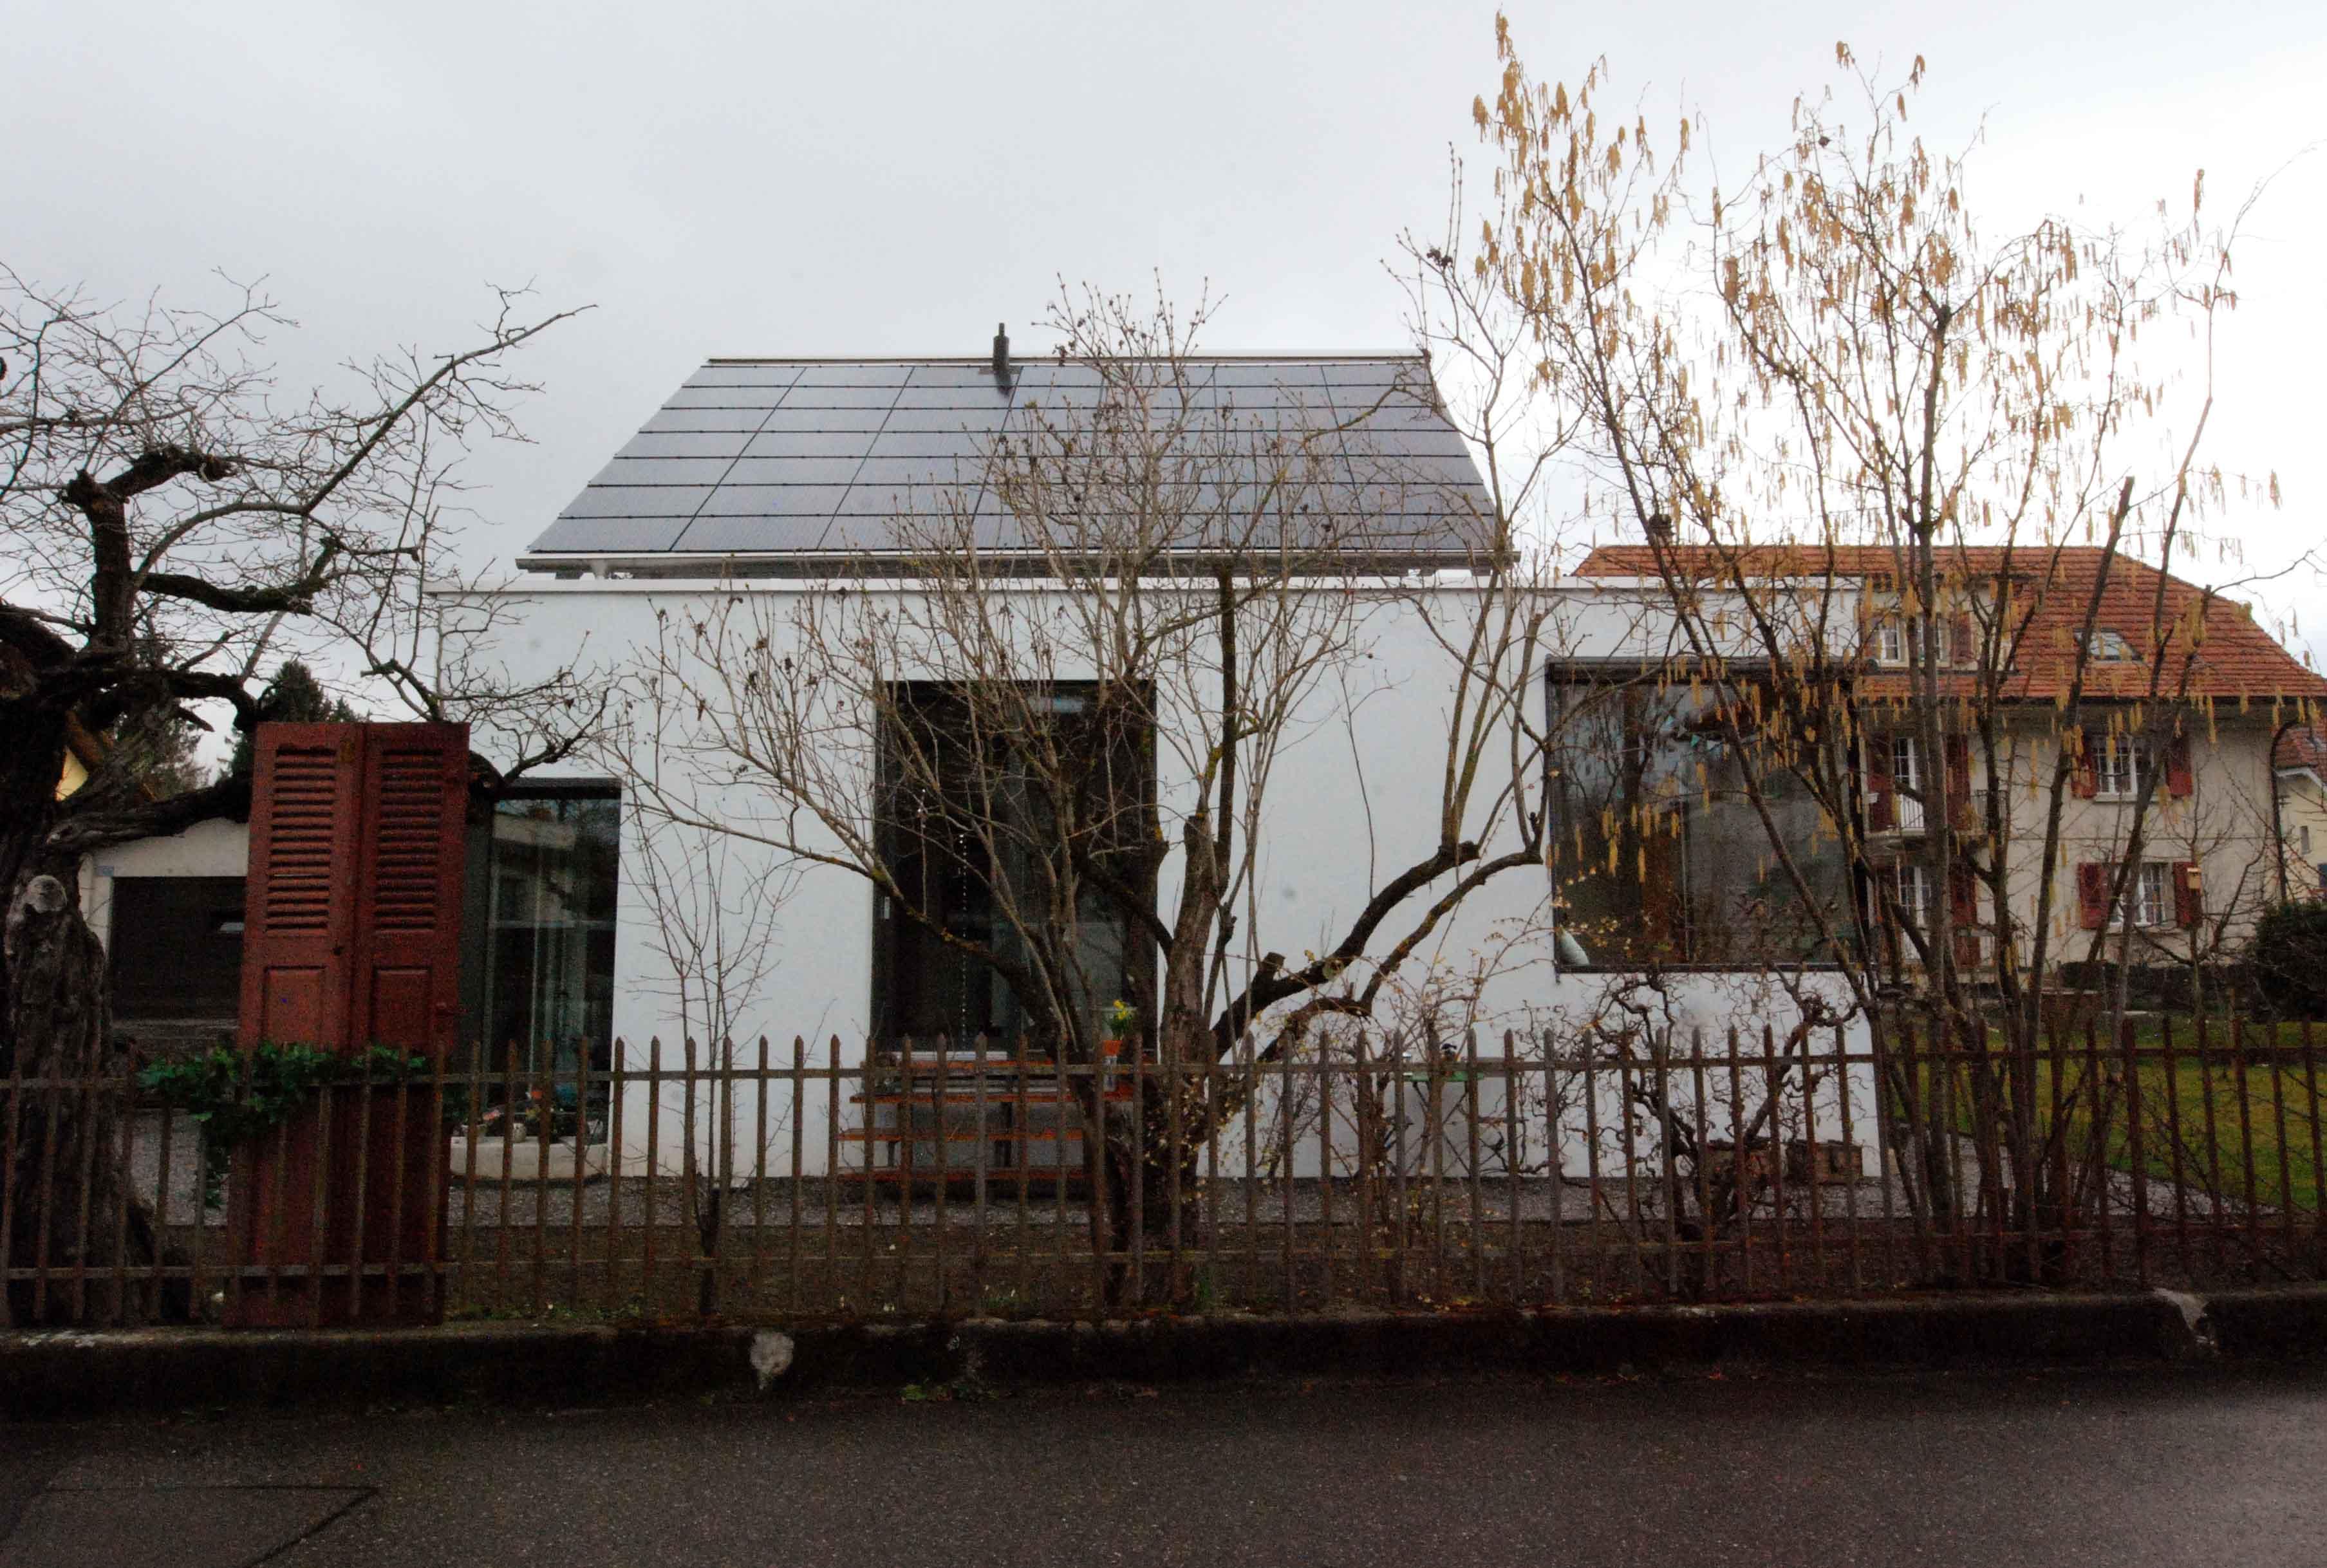 Architektur-Reportage Thun: Blick auf Fassade mit Fenstern und Solaranlage auf dem Dach